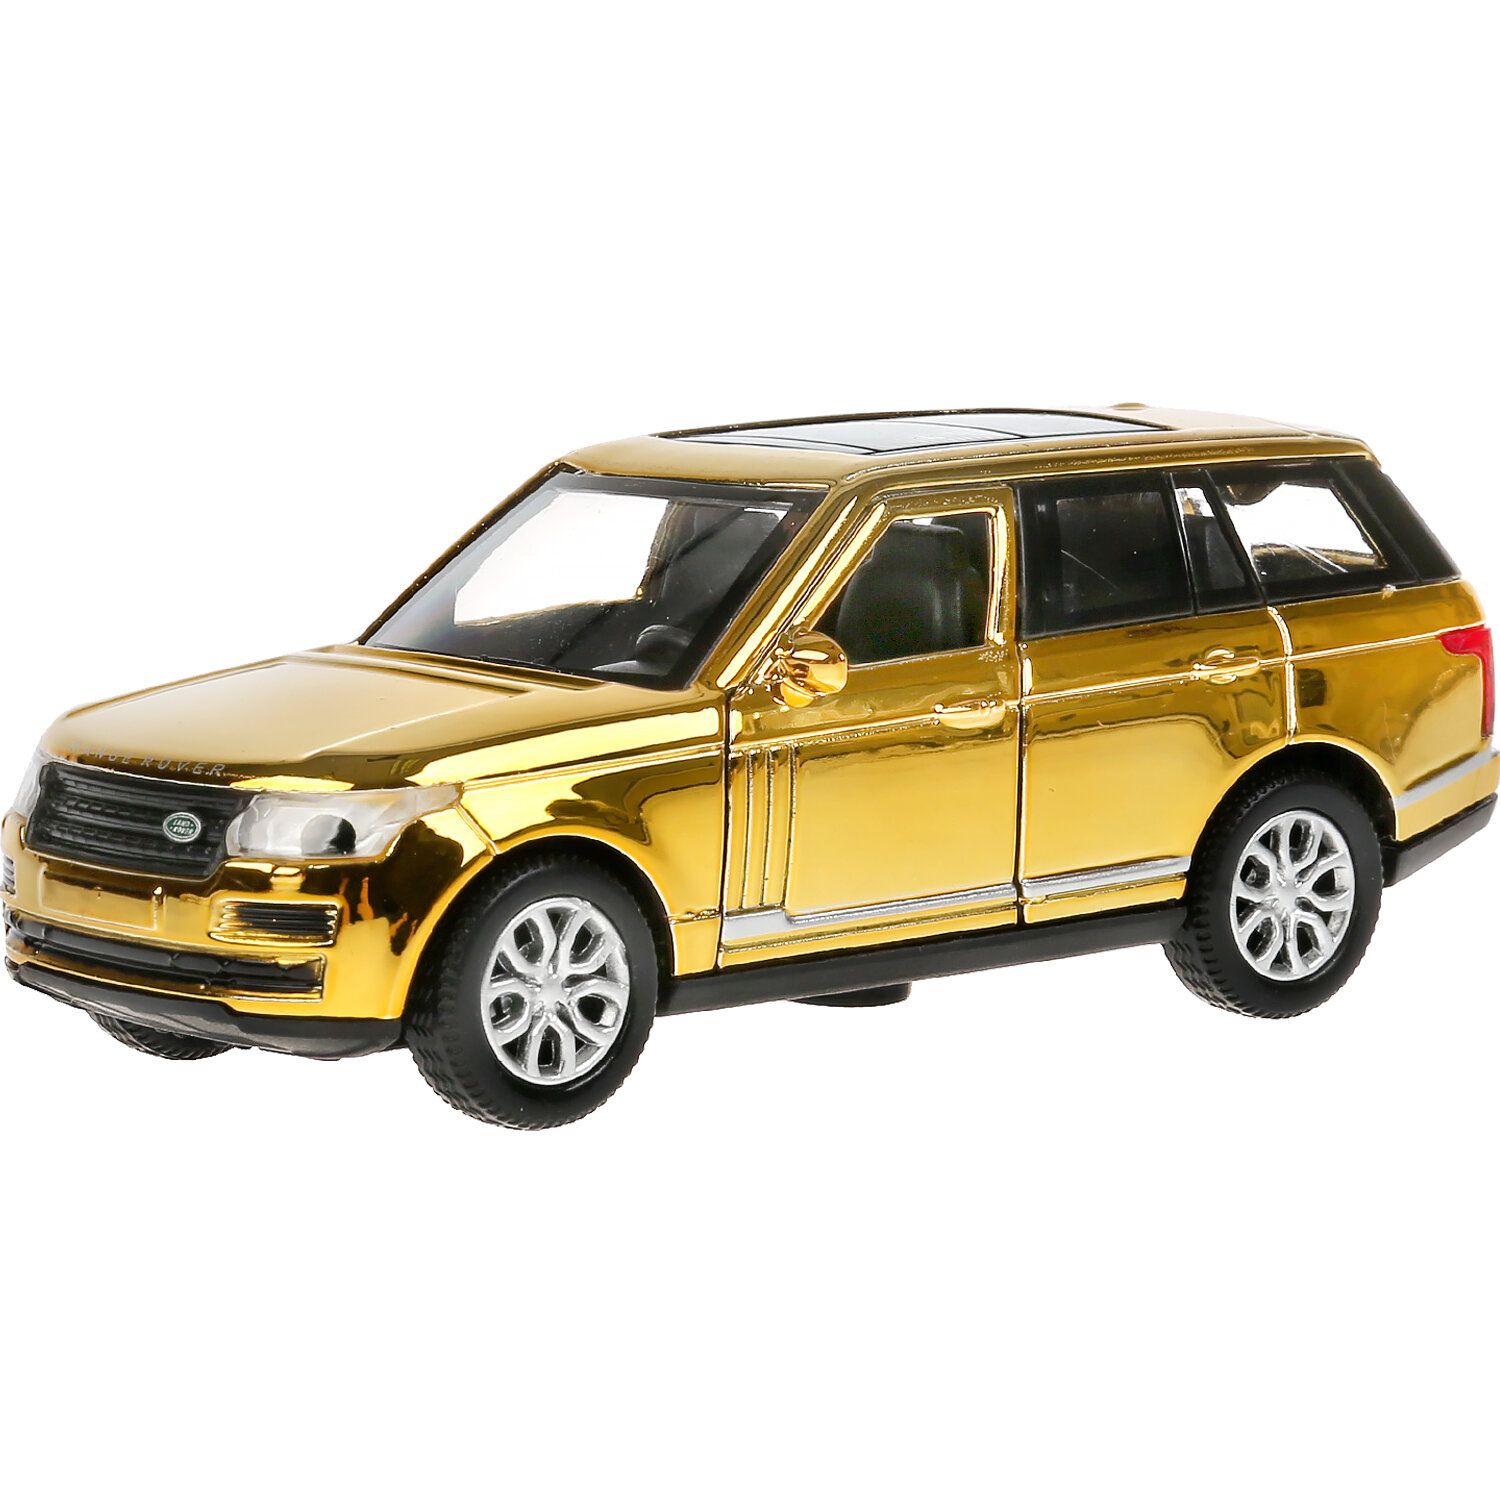 Машинка игрушка детская для мальчика Range Rover Vogue хром Технопарк детская модель металлическая коллекционная инерционная